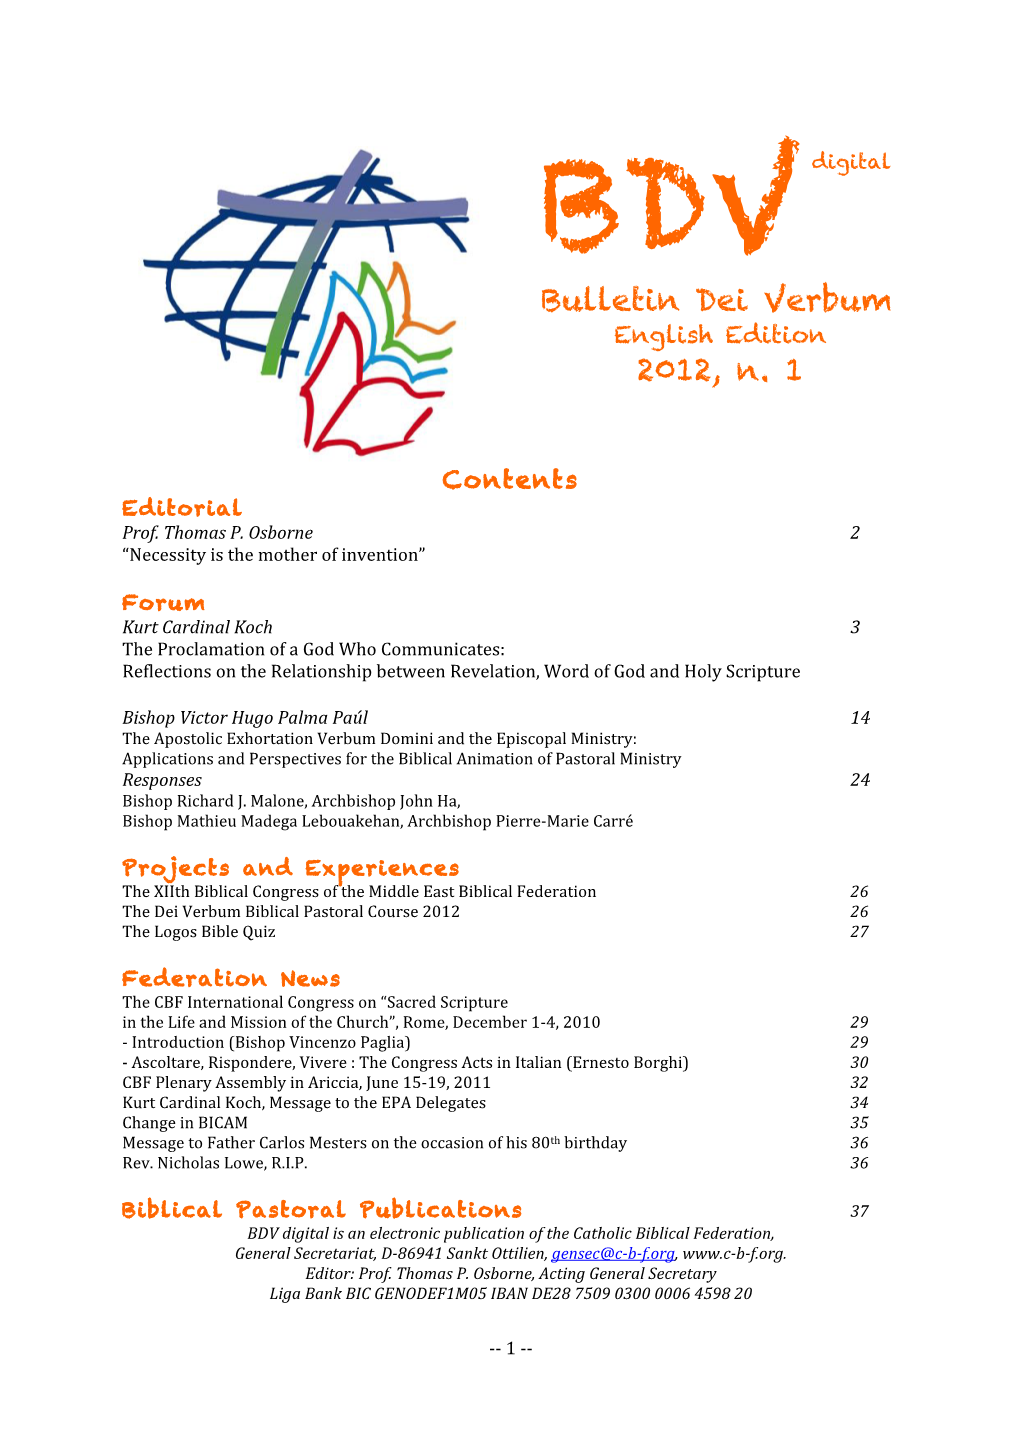 Bulletin Dei Verbum 2012, N. 1